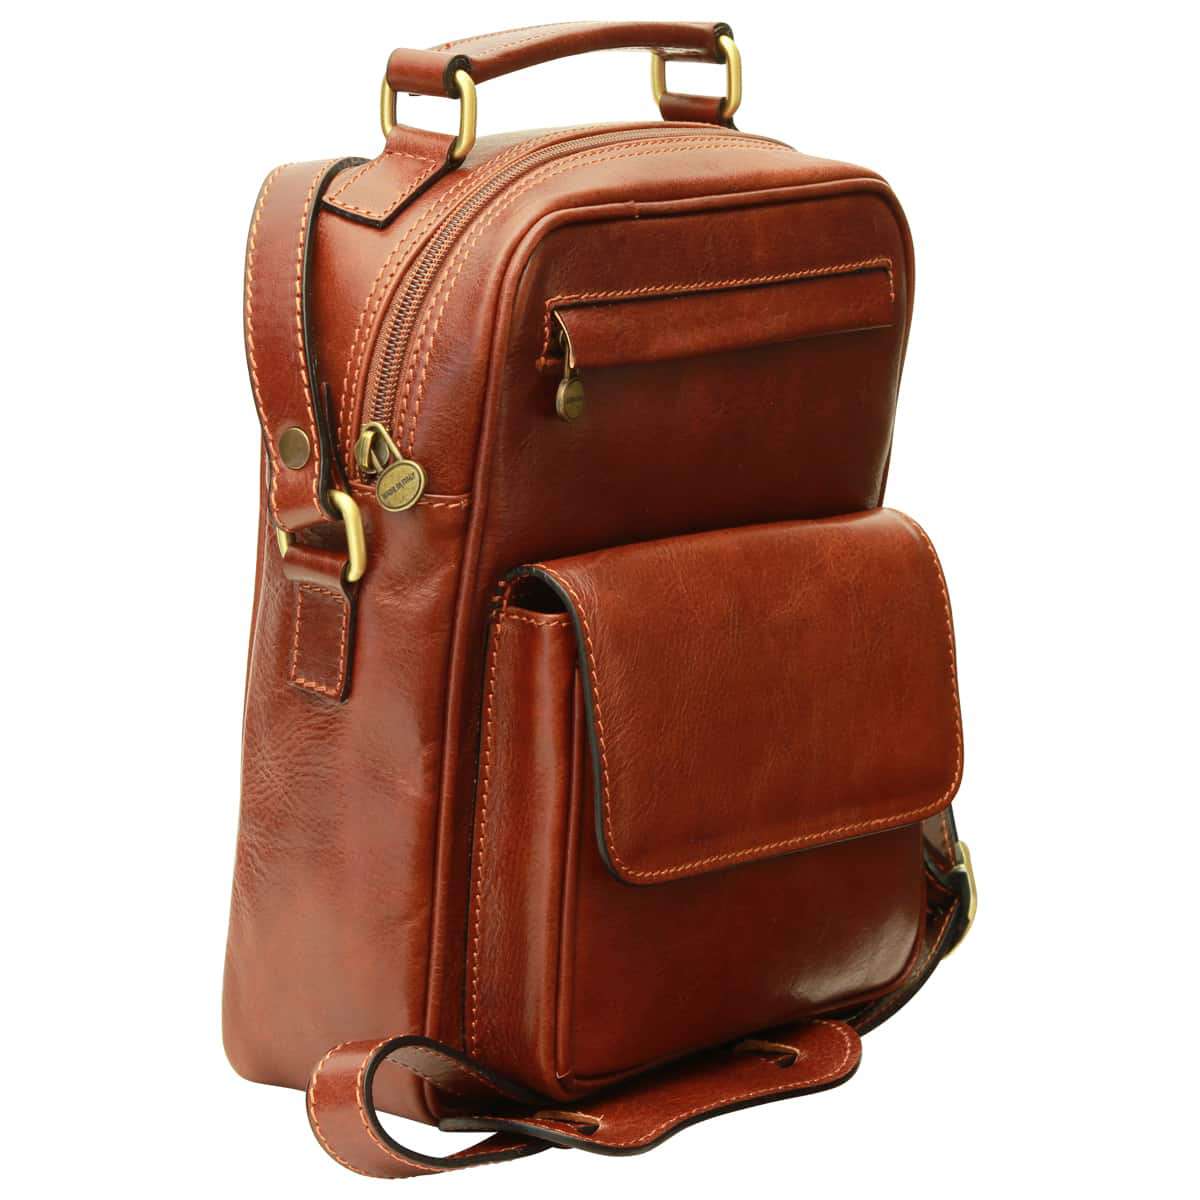 Leather Shoulder Bag with front pocket - Brown | 056405MA UK | Old Angler Firenze